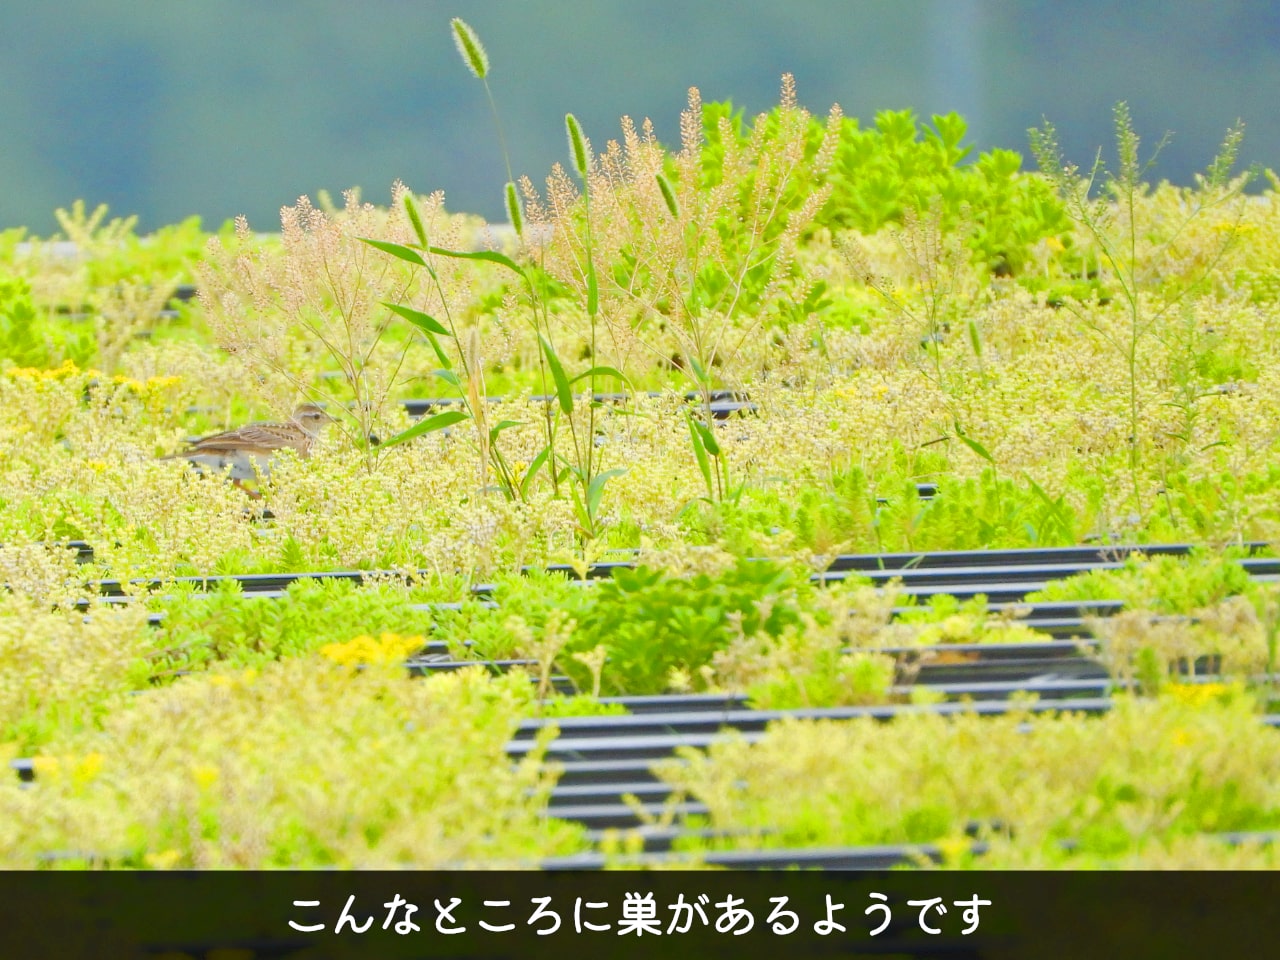 屋根の上の草むらにいるヒバリの写真